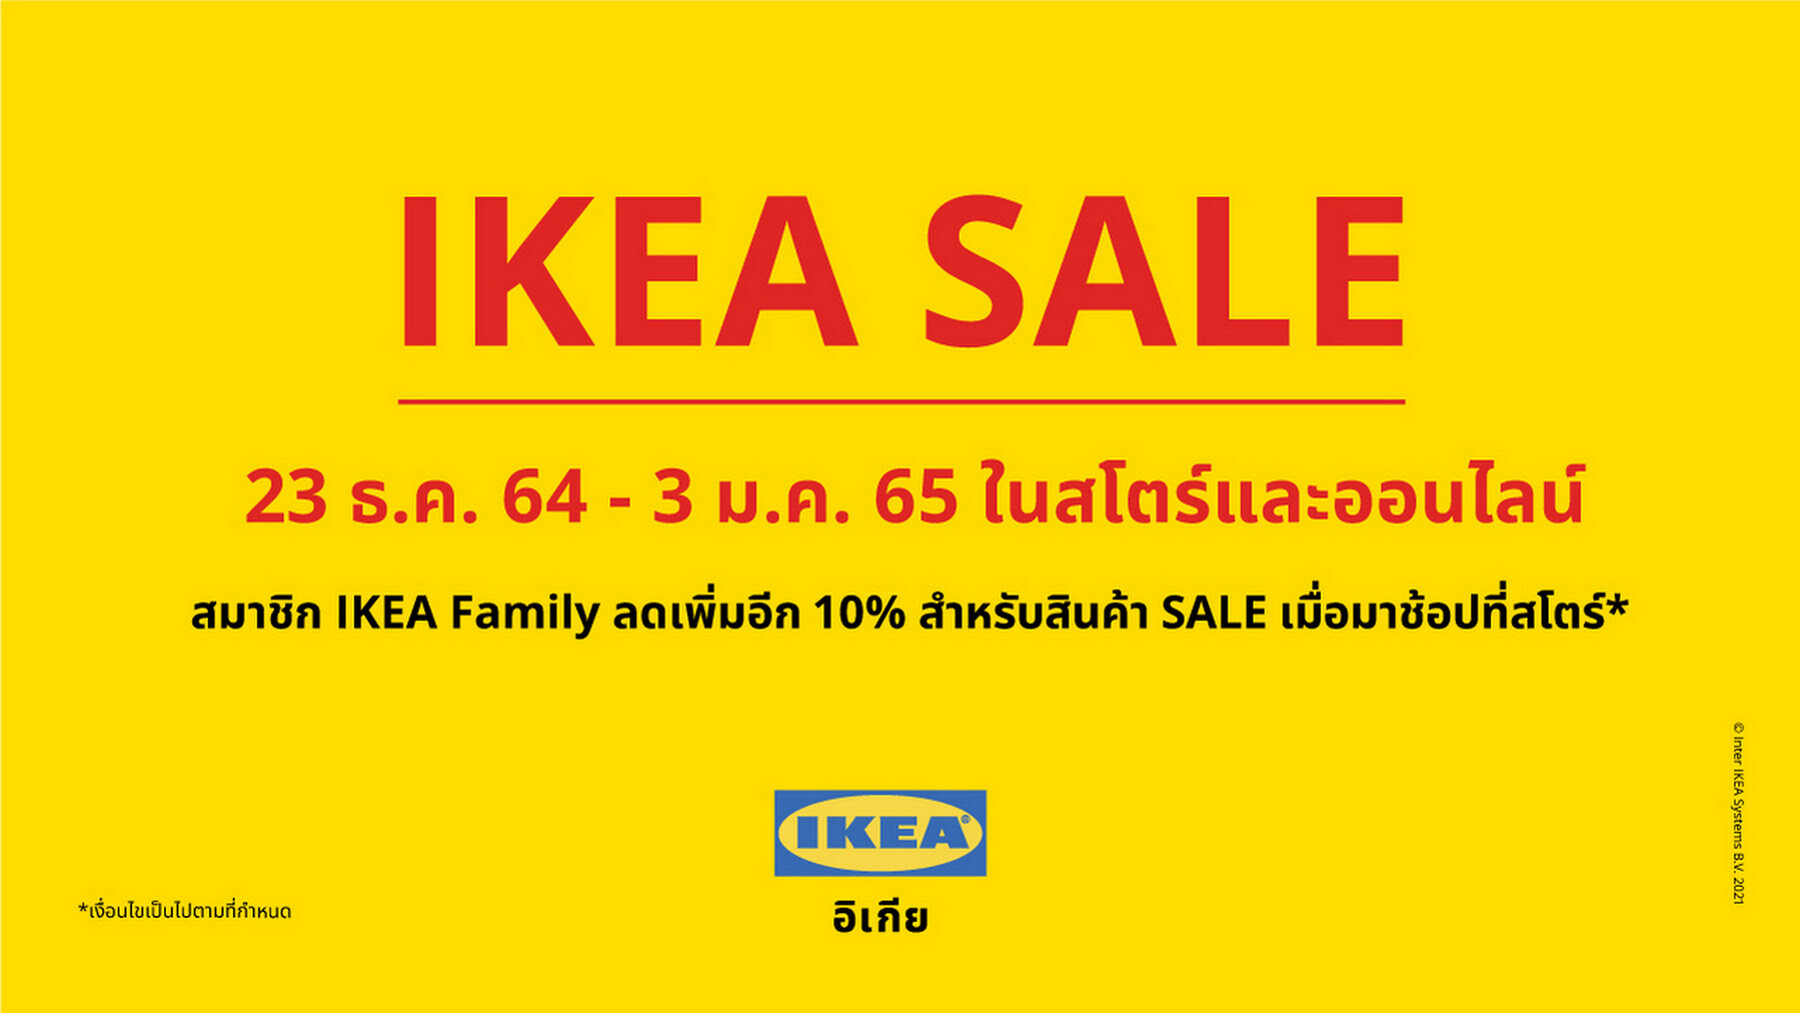 เตรียมช้อปของแต่งบ้าน "IKEA SALE" มหกรรมเซลส่งท้ายปี พิเศษ! สมาชิก IKEA FAMILY ลดเพิ่มอีก 10% ตั้งแต่ 23 ธ.ค. 64 - 3 ม.ค. 65